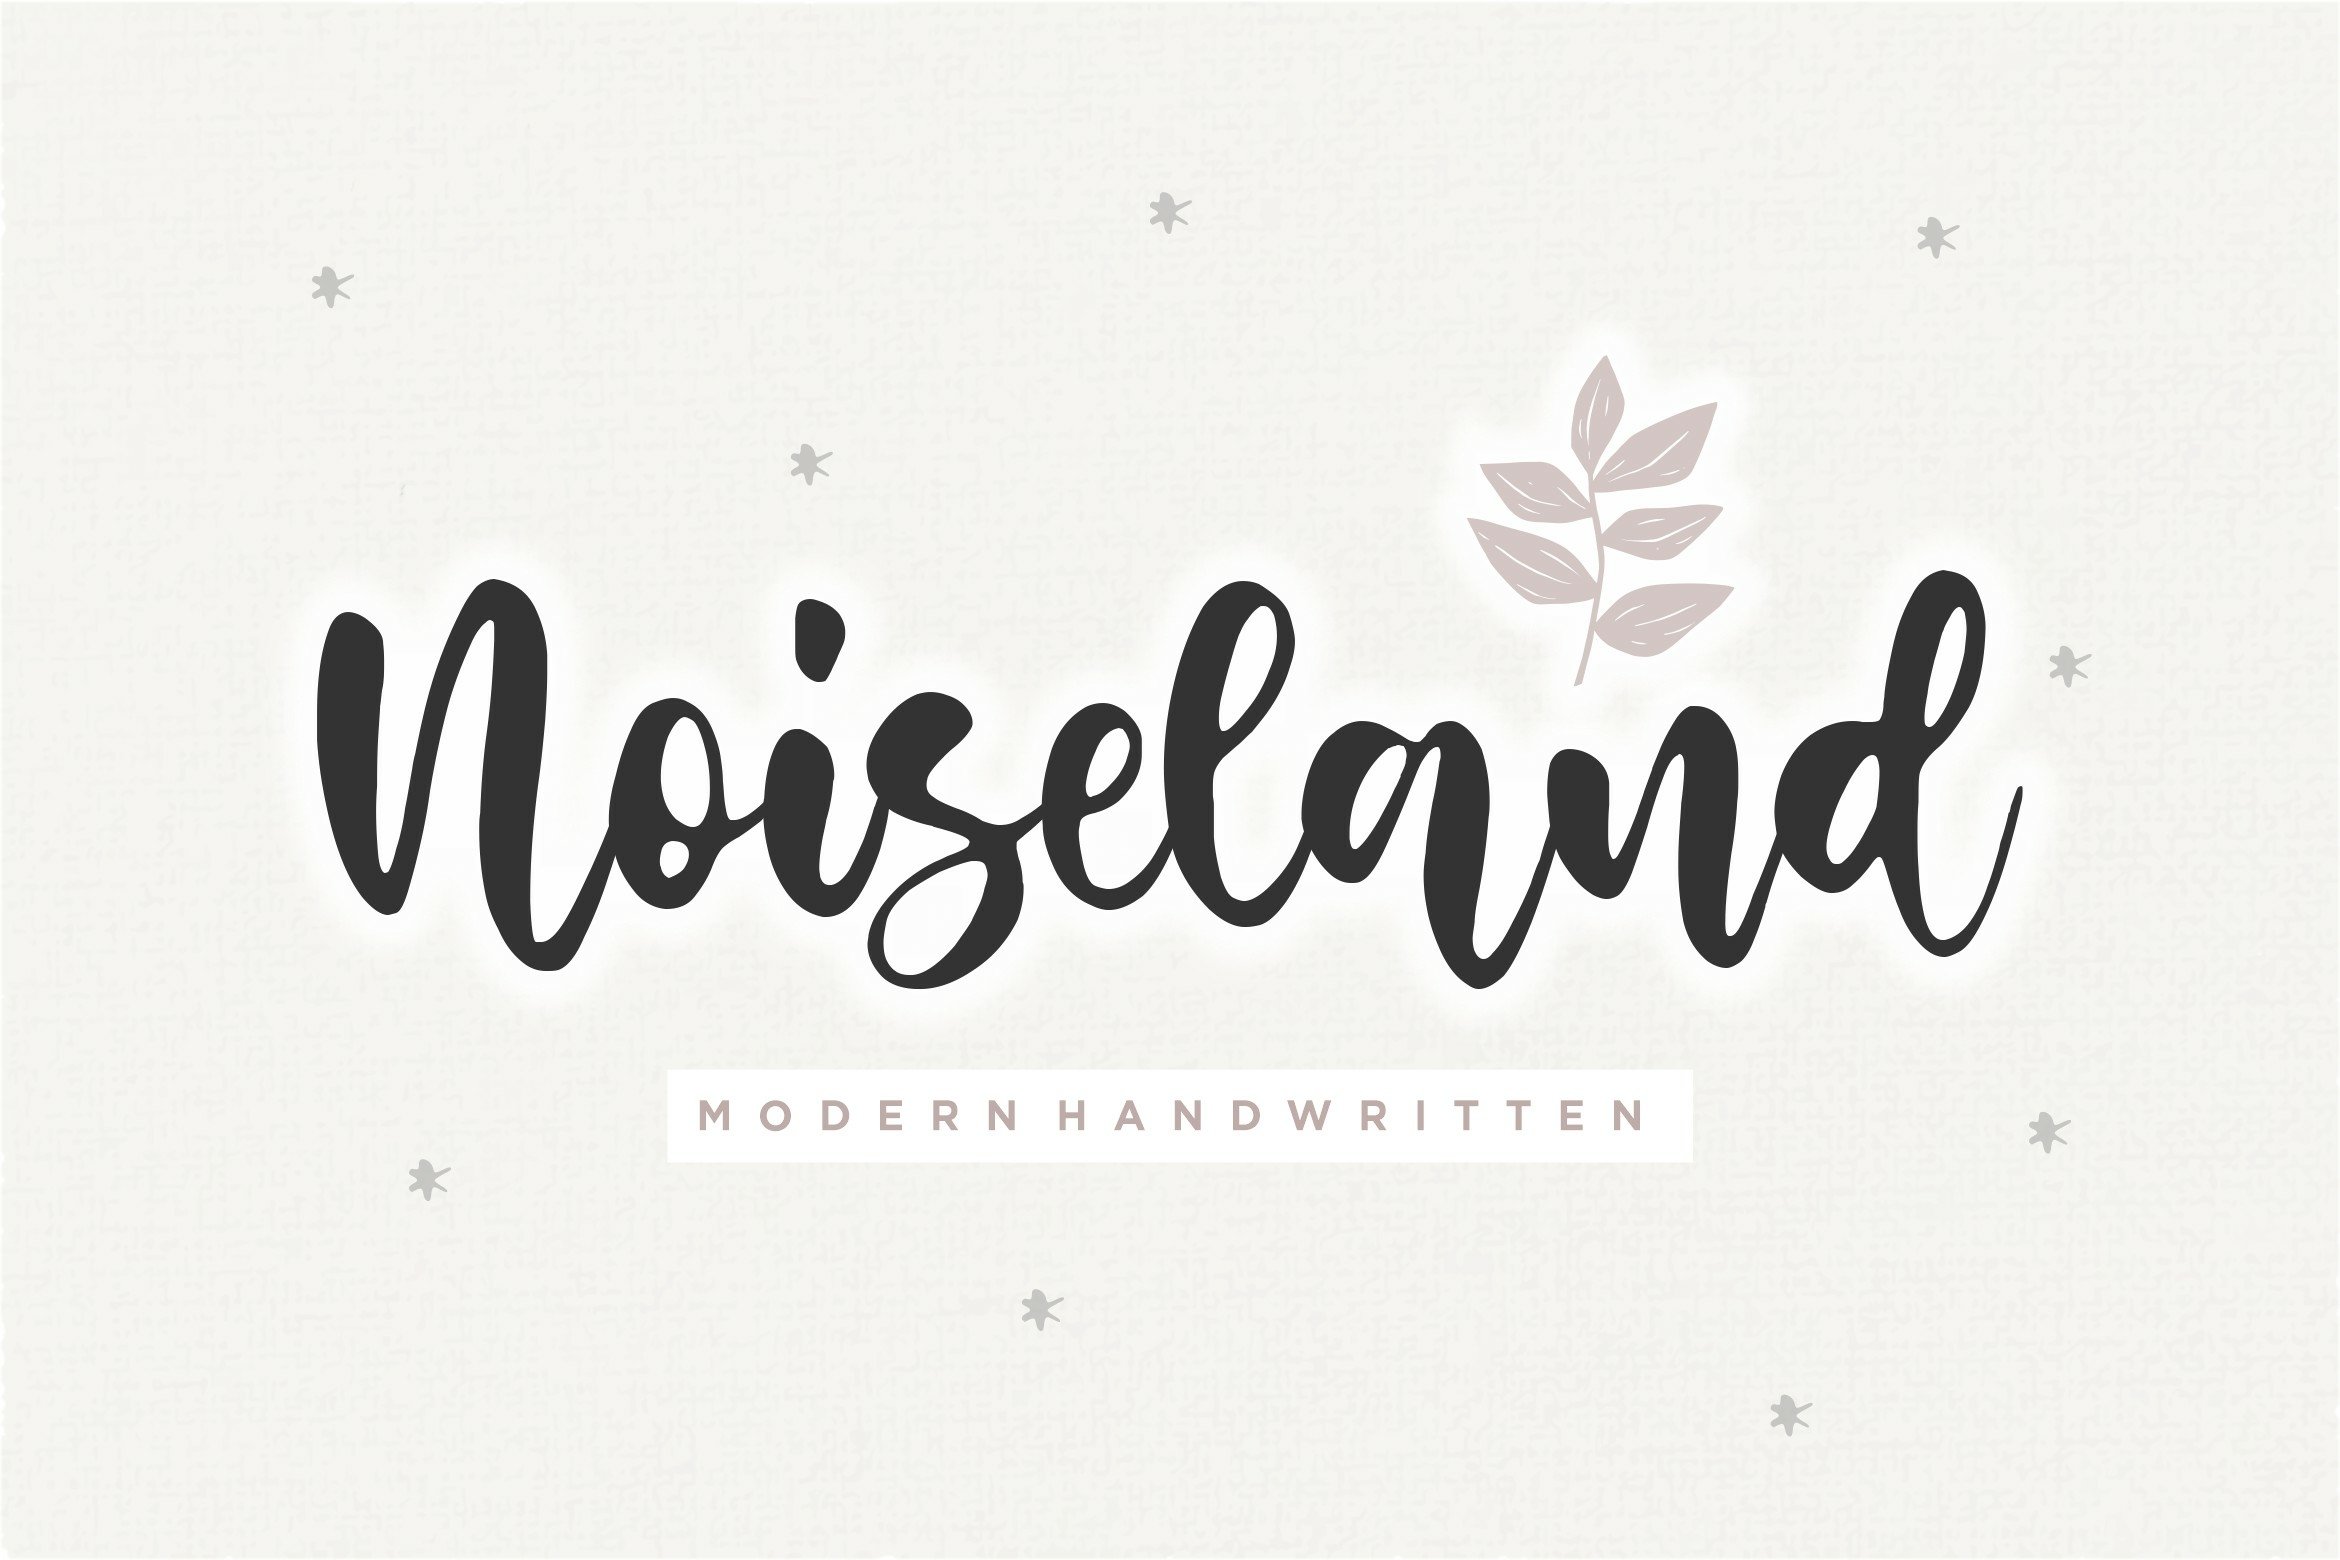 Noiseland Modern Handwritten Font1